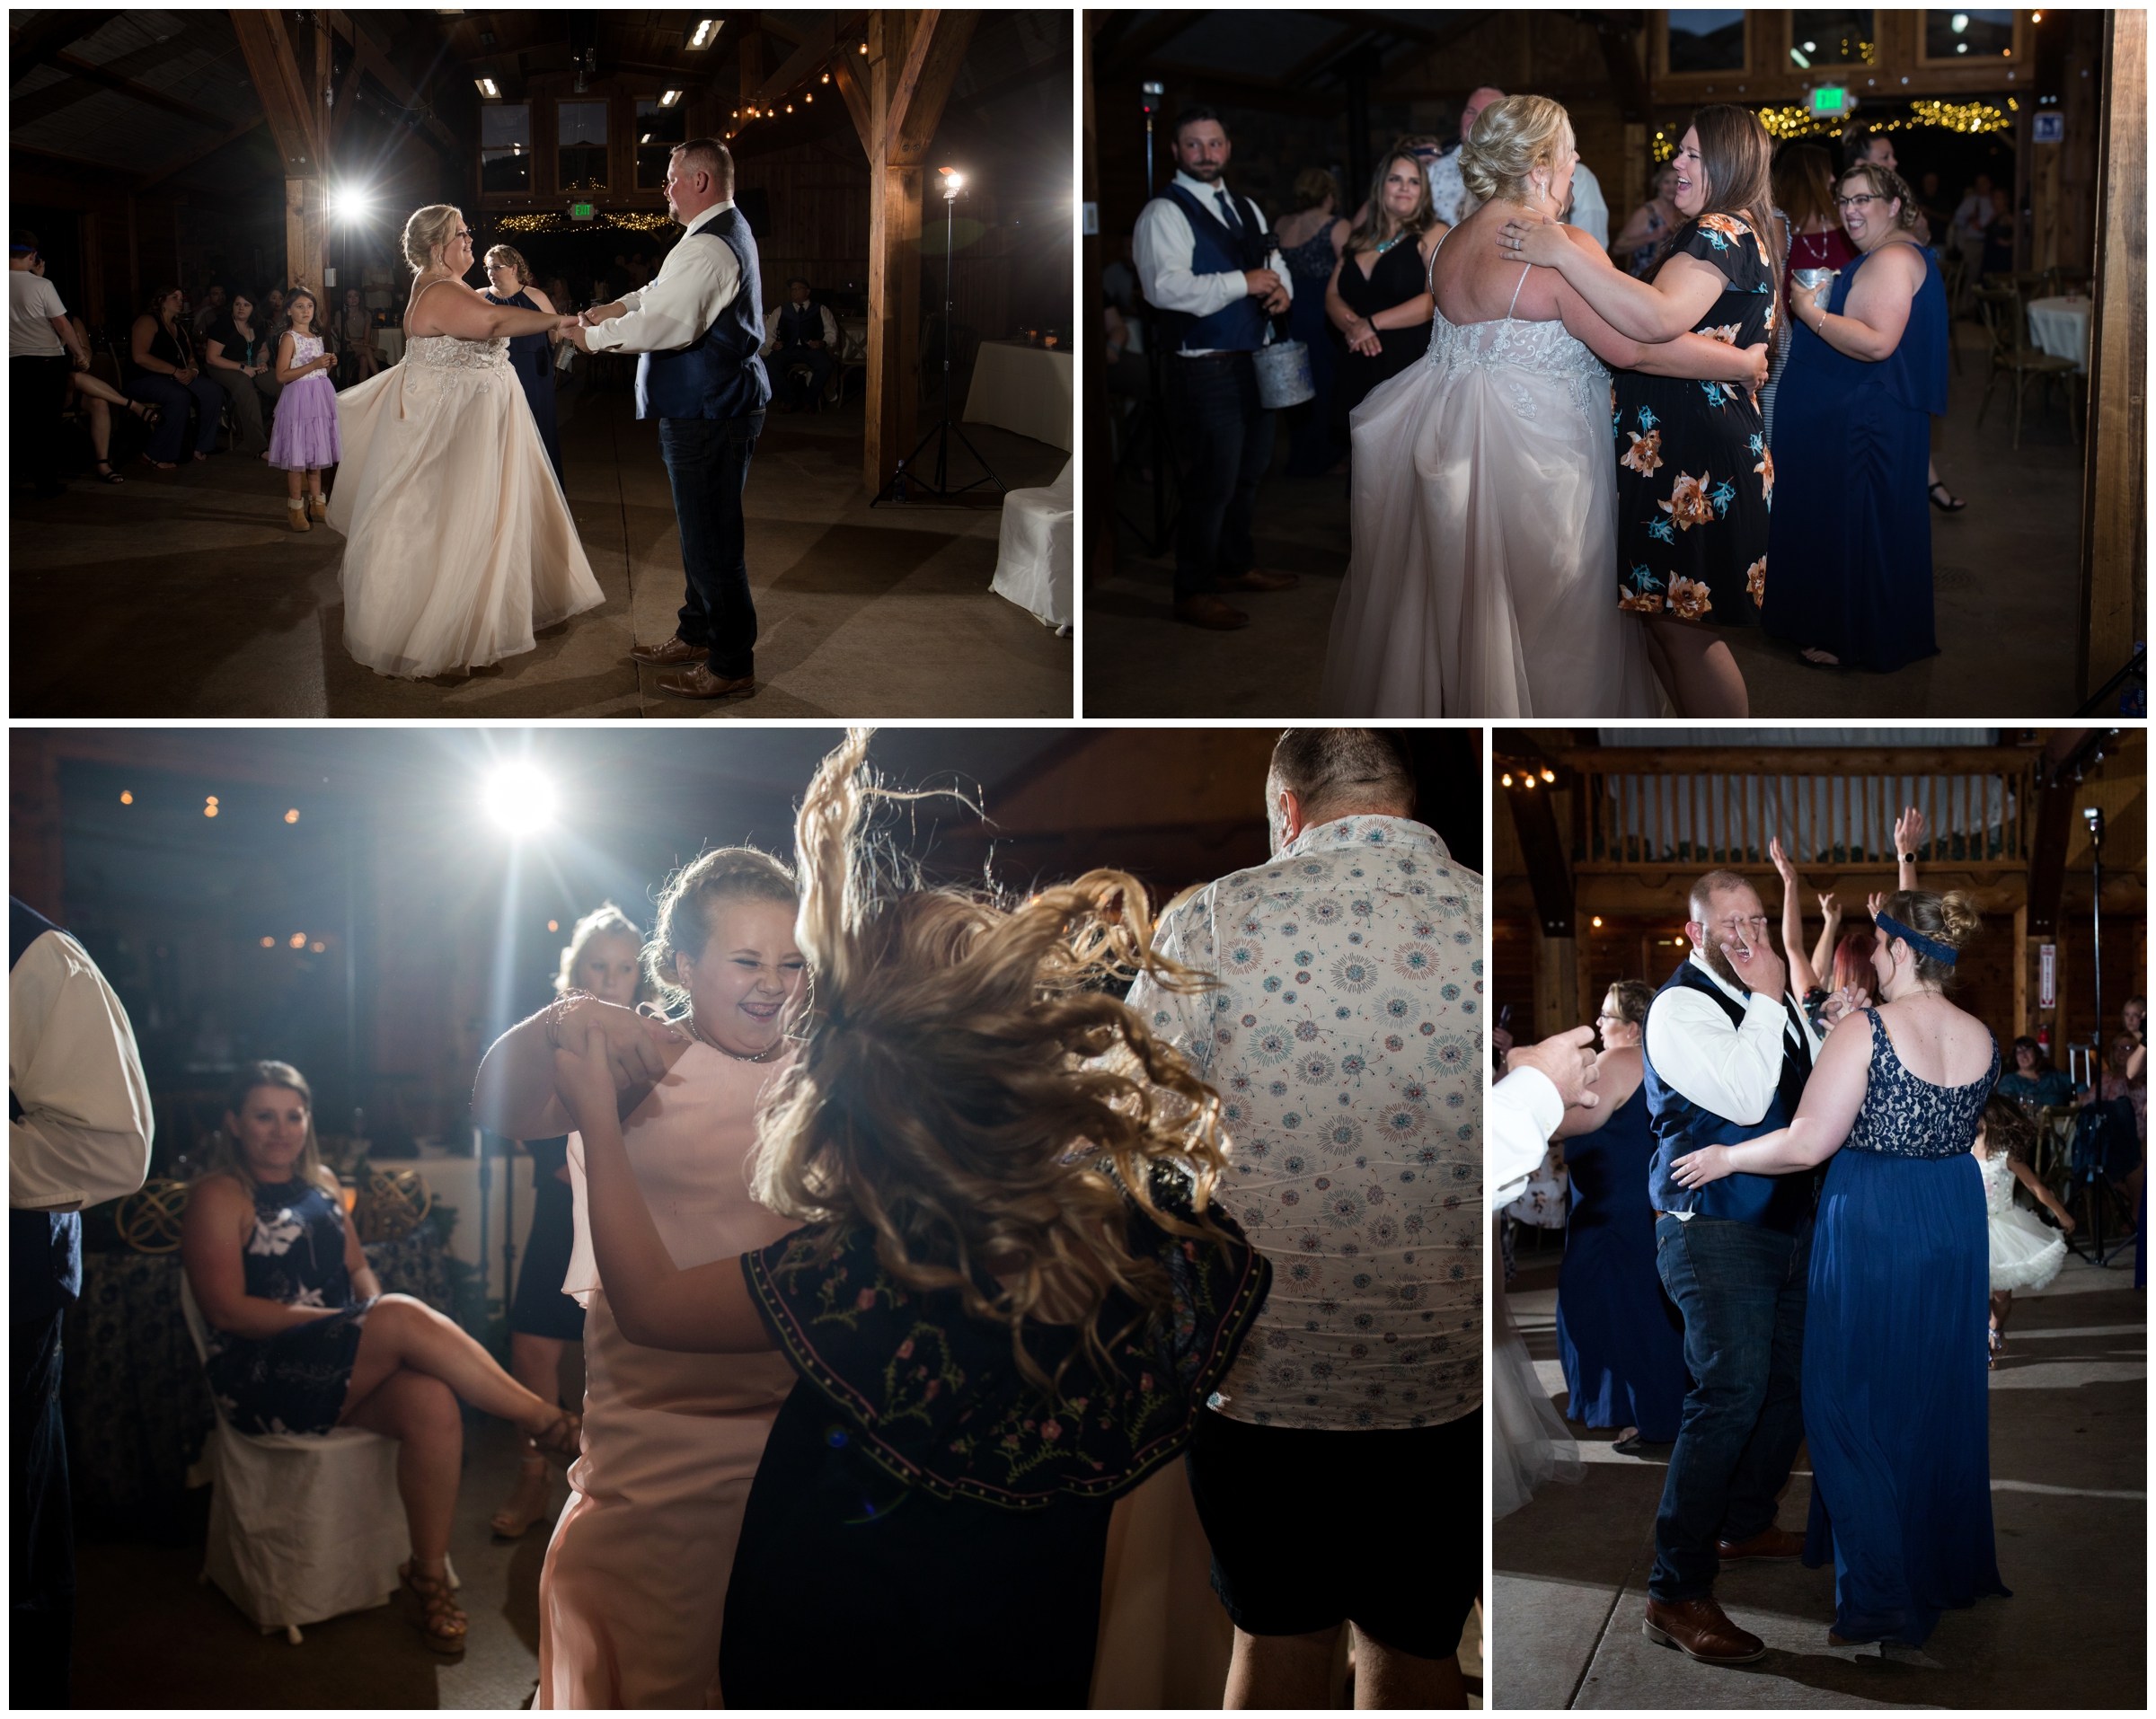 guests dancing at Colorado barn wedding reception 